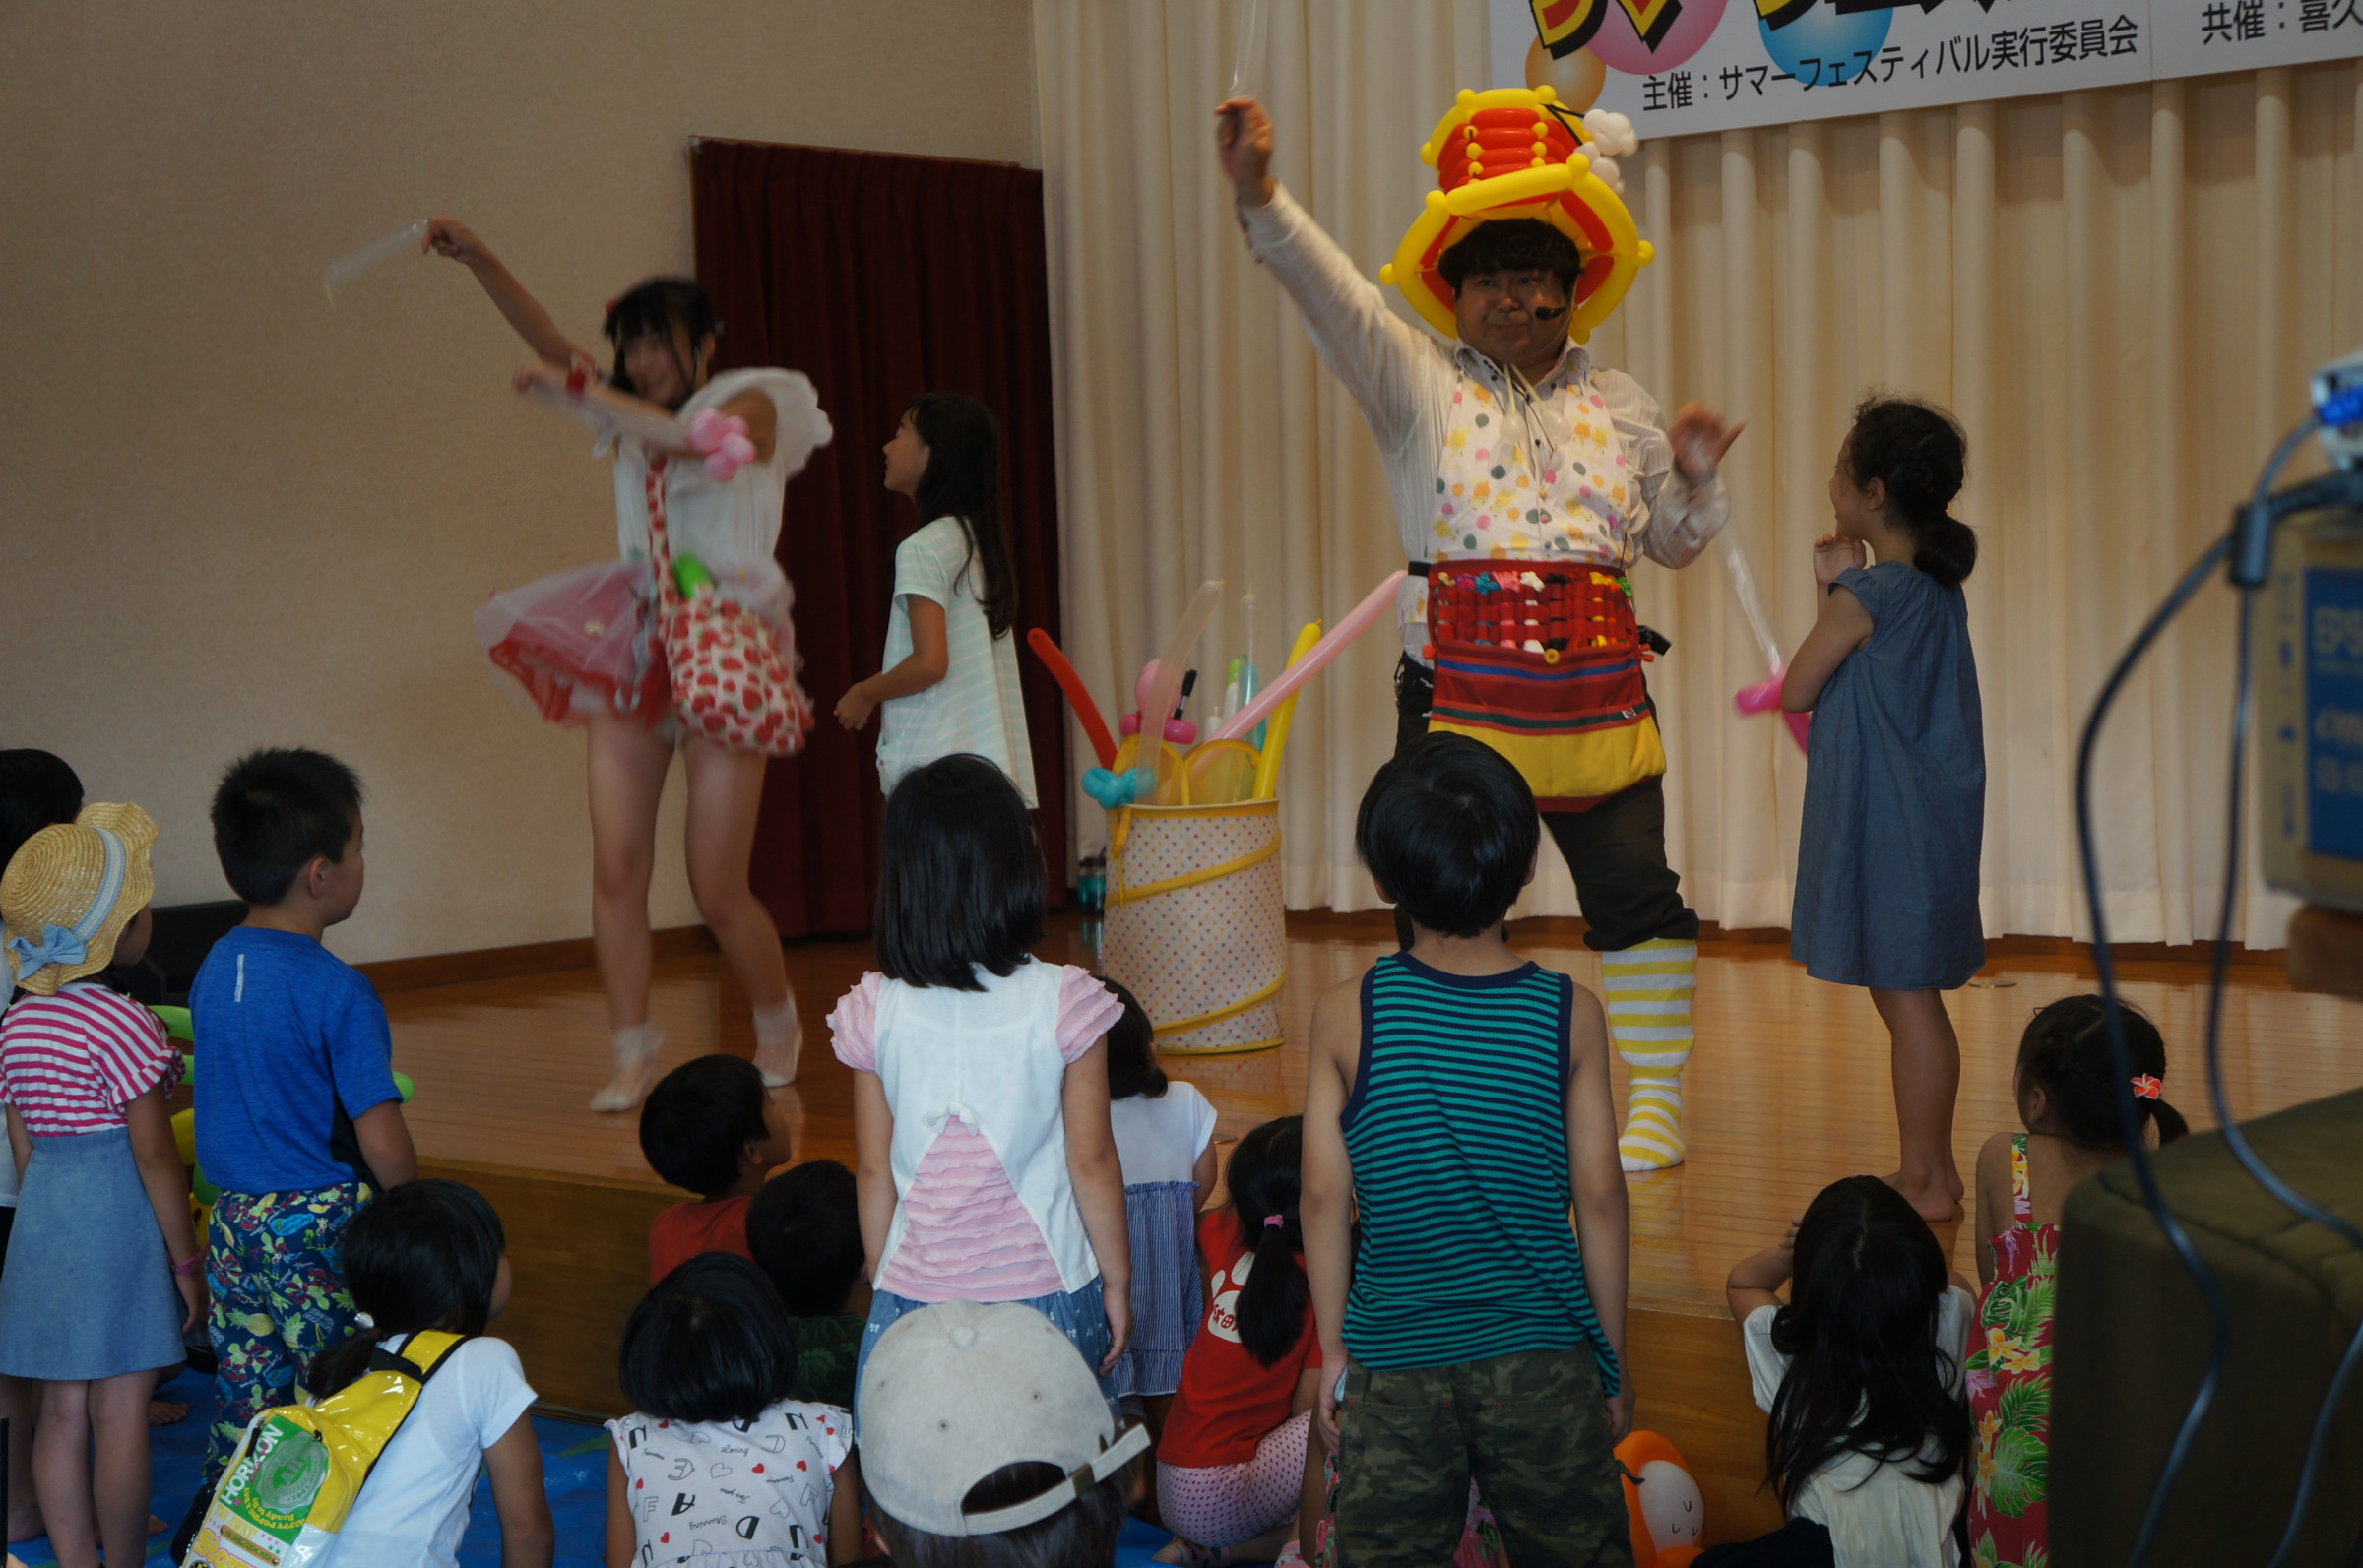 サマーフェスティバルインきくた　喜久田町の夏イベント　さまざまな催しで住民を楽しませています。旅館宿泊券や温泉リゾート入場料があたる抽選会も実施中